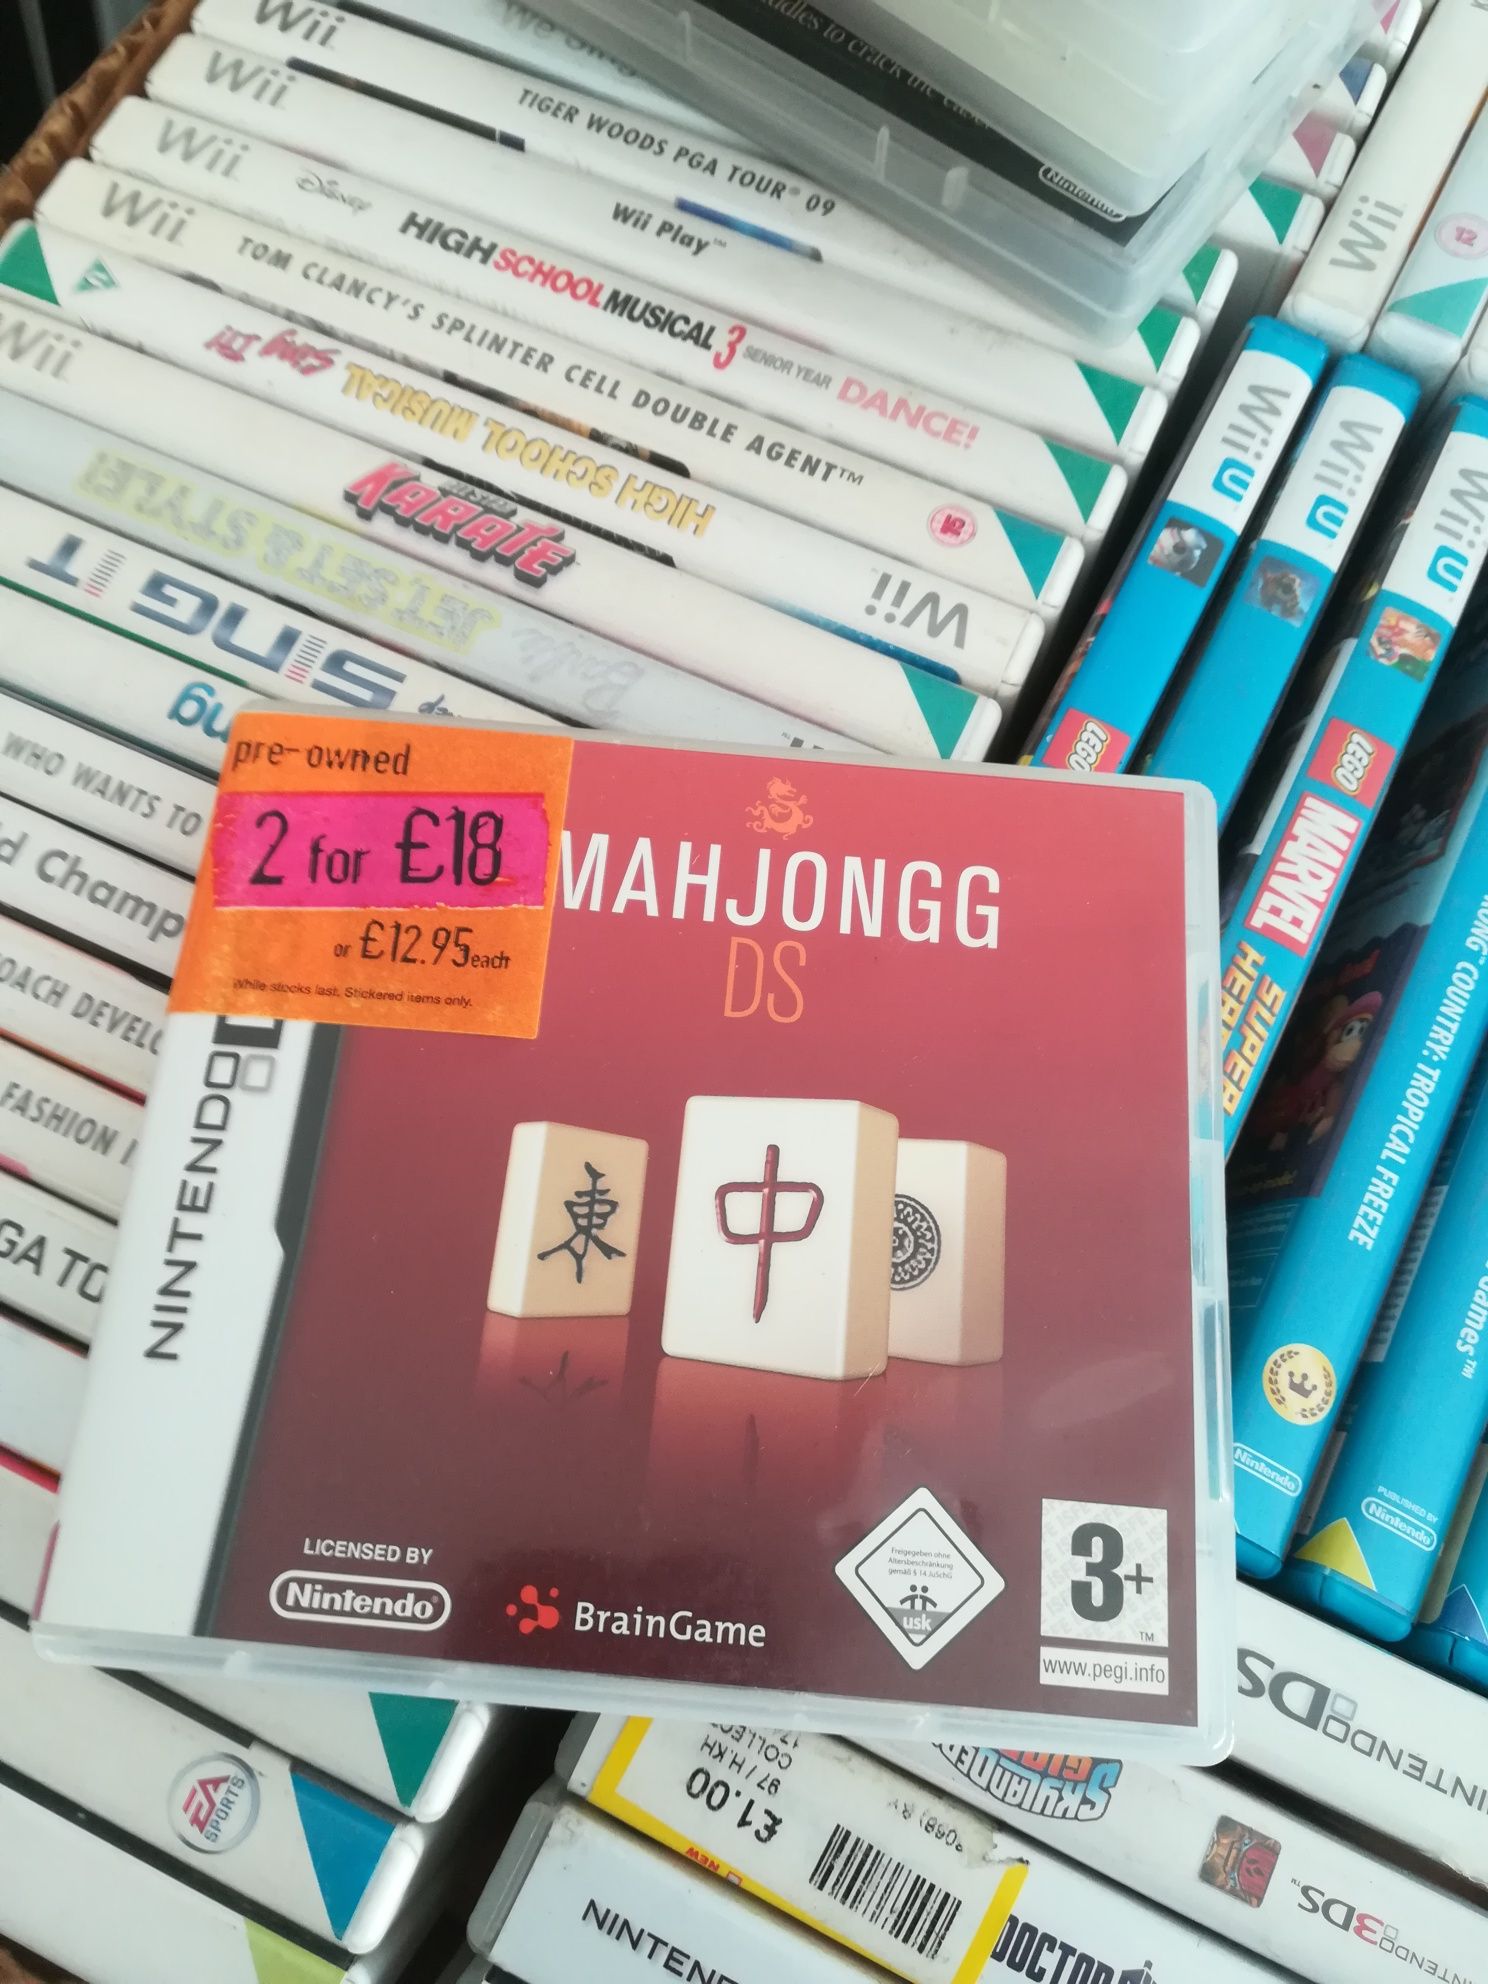 Mah jongg mahjongg Nintendo DS